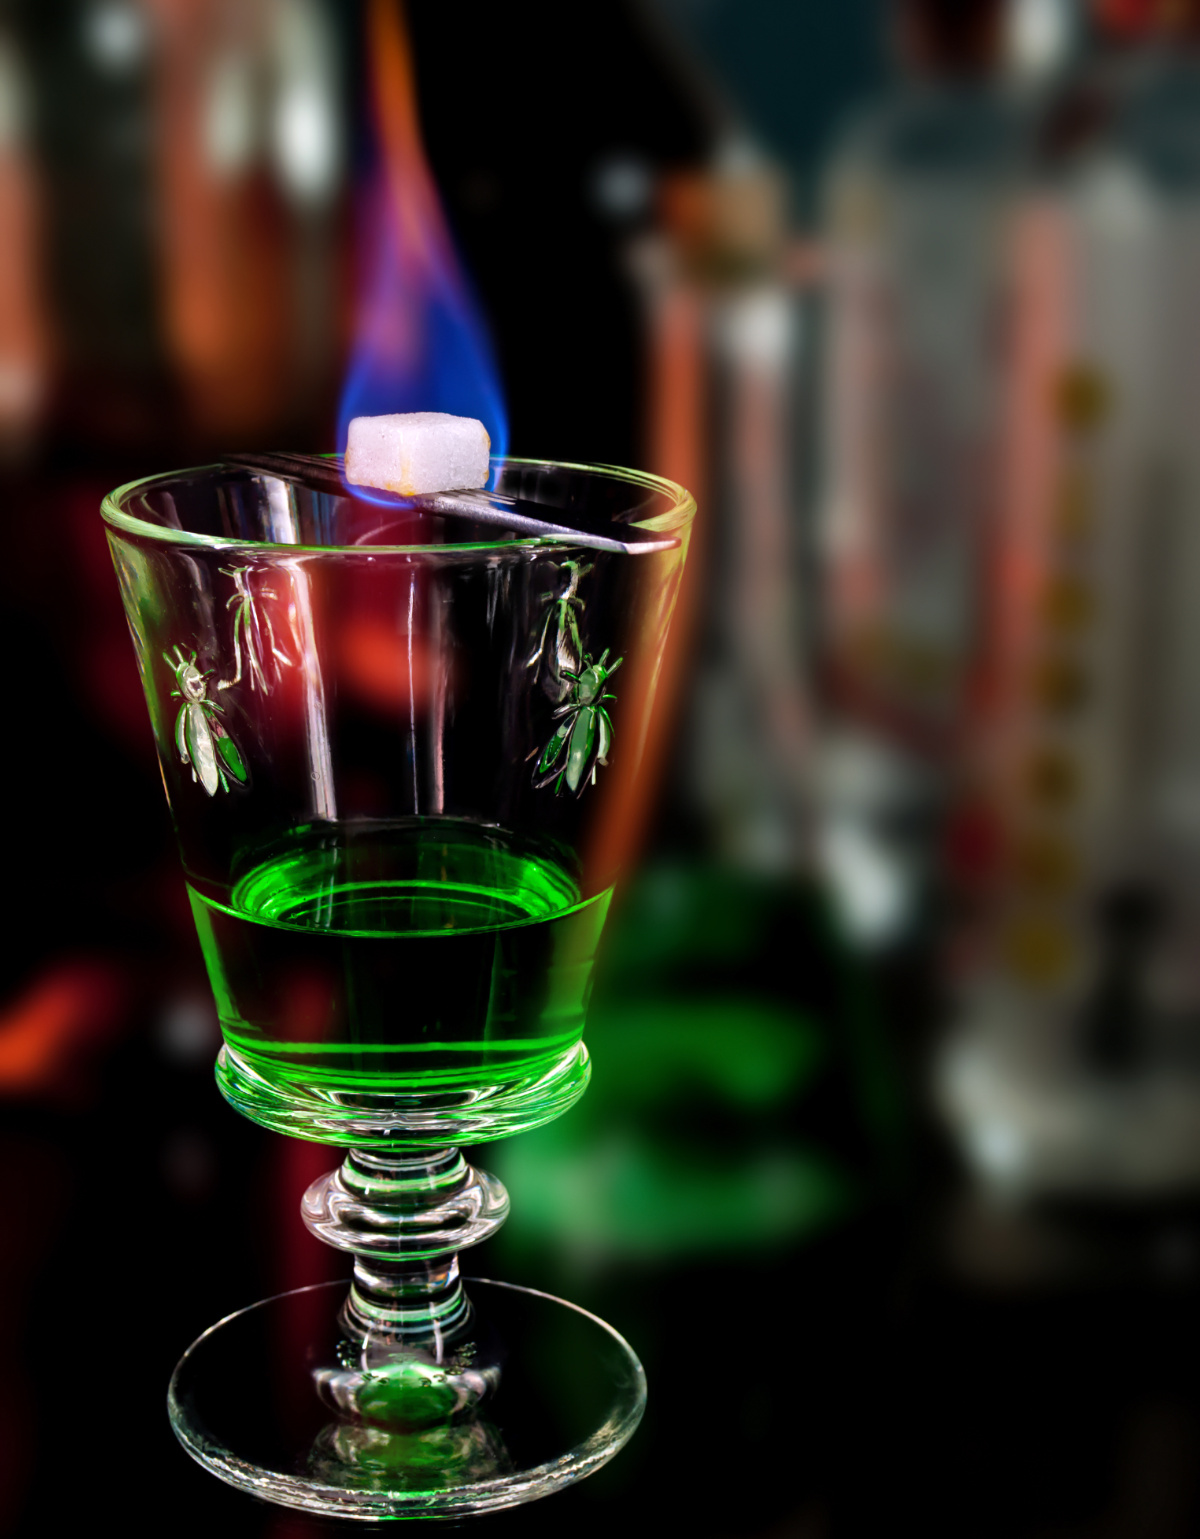 압생트는 쑥을 잘게 썰어 고동노의 알코올을 부어 증류한  것으로 술인데, 처음에는 불로장생의 명약으로 알려졌다. 이후 프랑스의 문인들은 창조력의 원천이라며 이 술을 애용했다. 알코올 도수가 45~ 74도까지 된다.